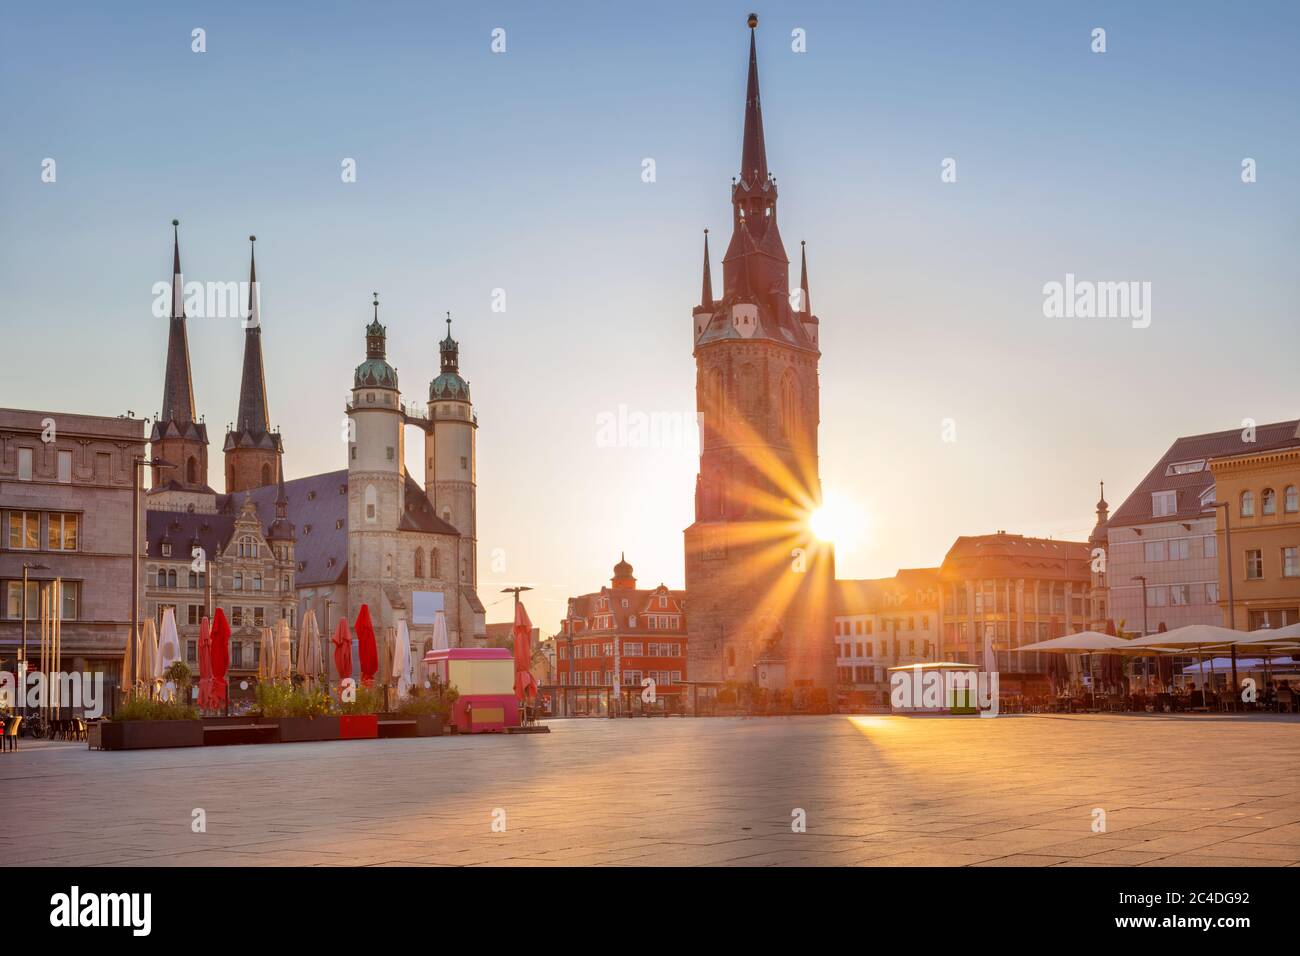 Halle, Alemania. Paisaje urbano imagen del centro histórico de Halle (Saale) con la Torre Roja y el mercado durante la hermosa puesta de sol de verano. Foto de stock